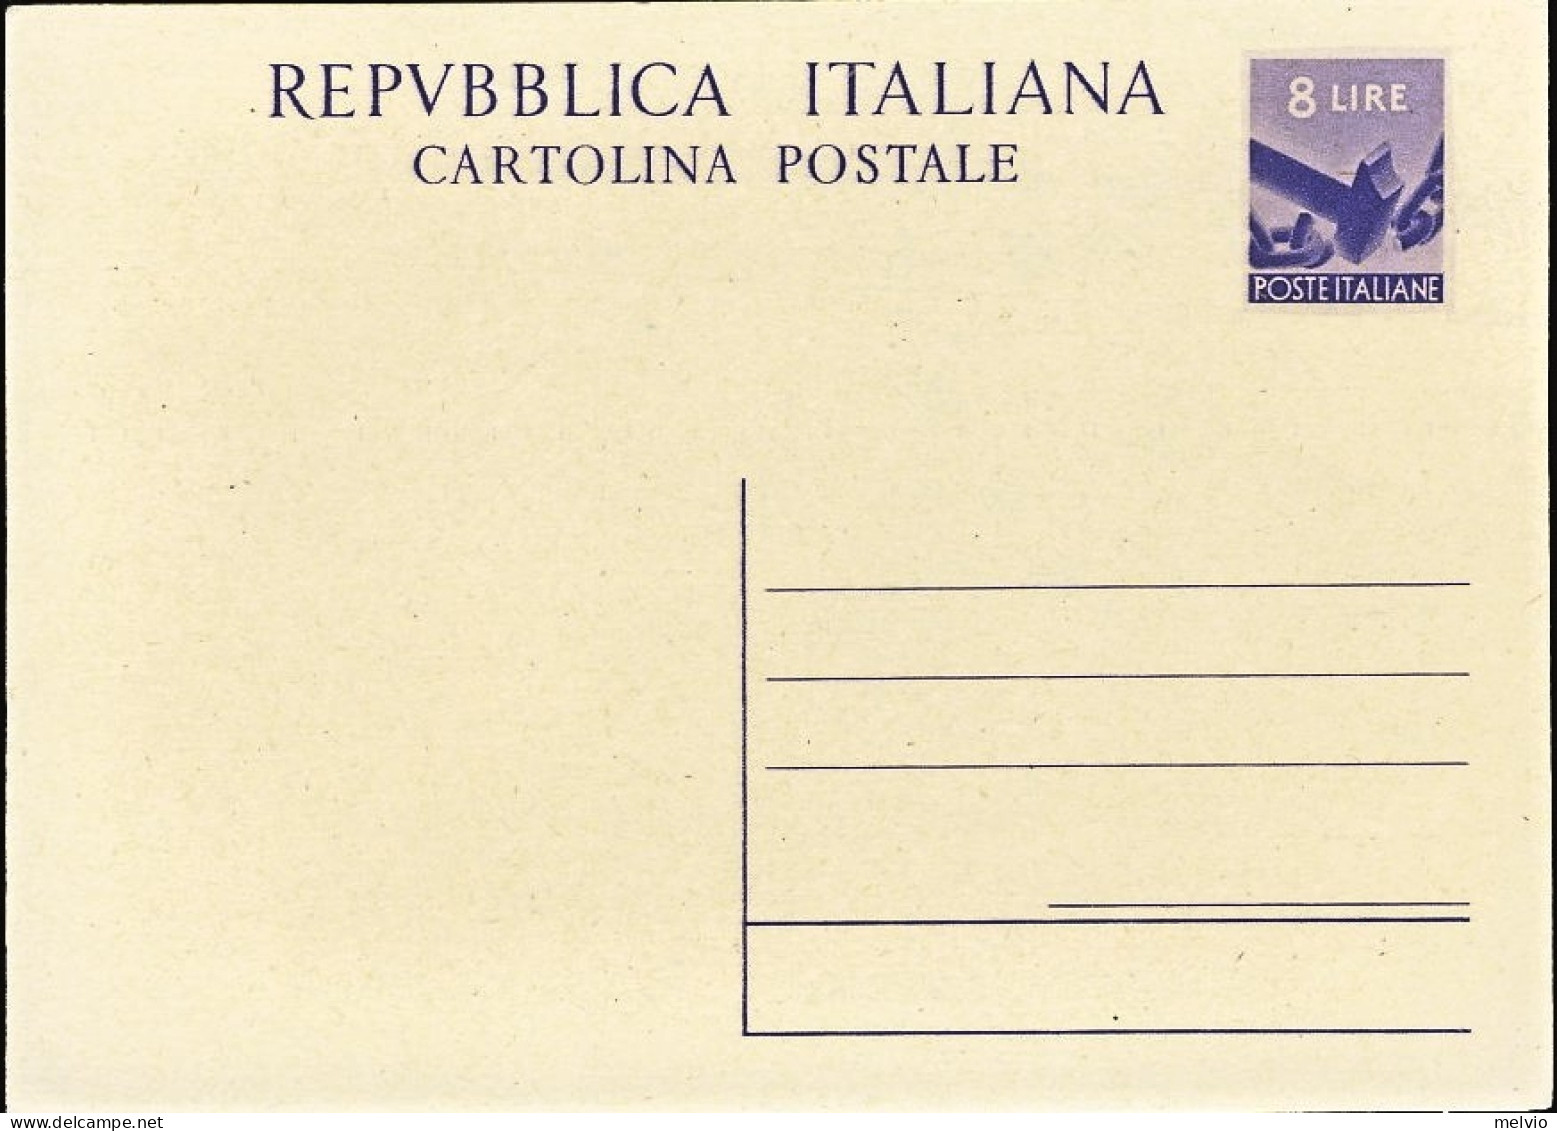 1947/49-cartolina Postale L.8 Martello Democratica "Repubblica Italiana" Cat.Fil - Interi Postali